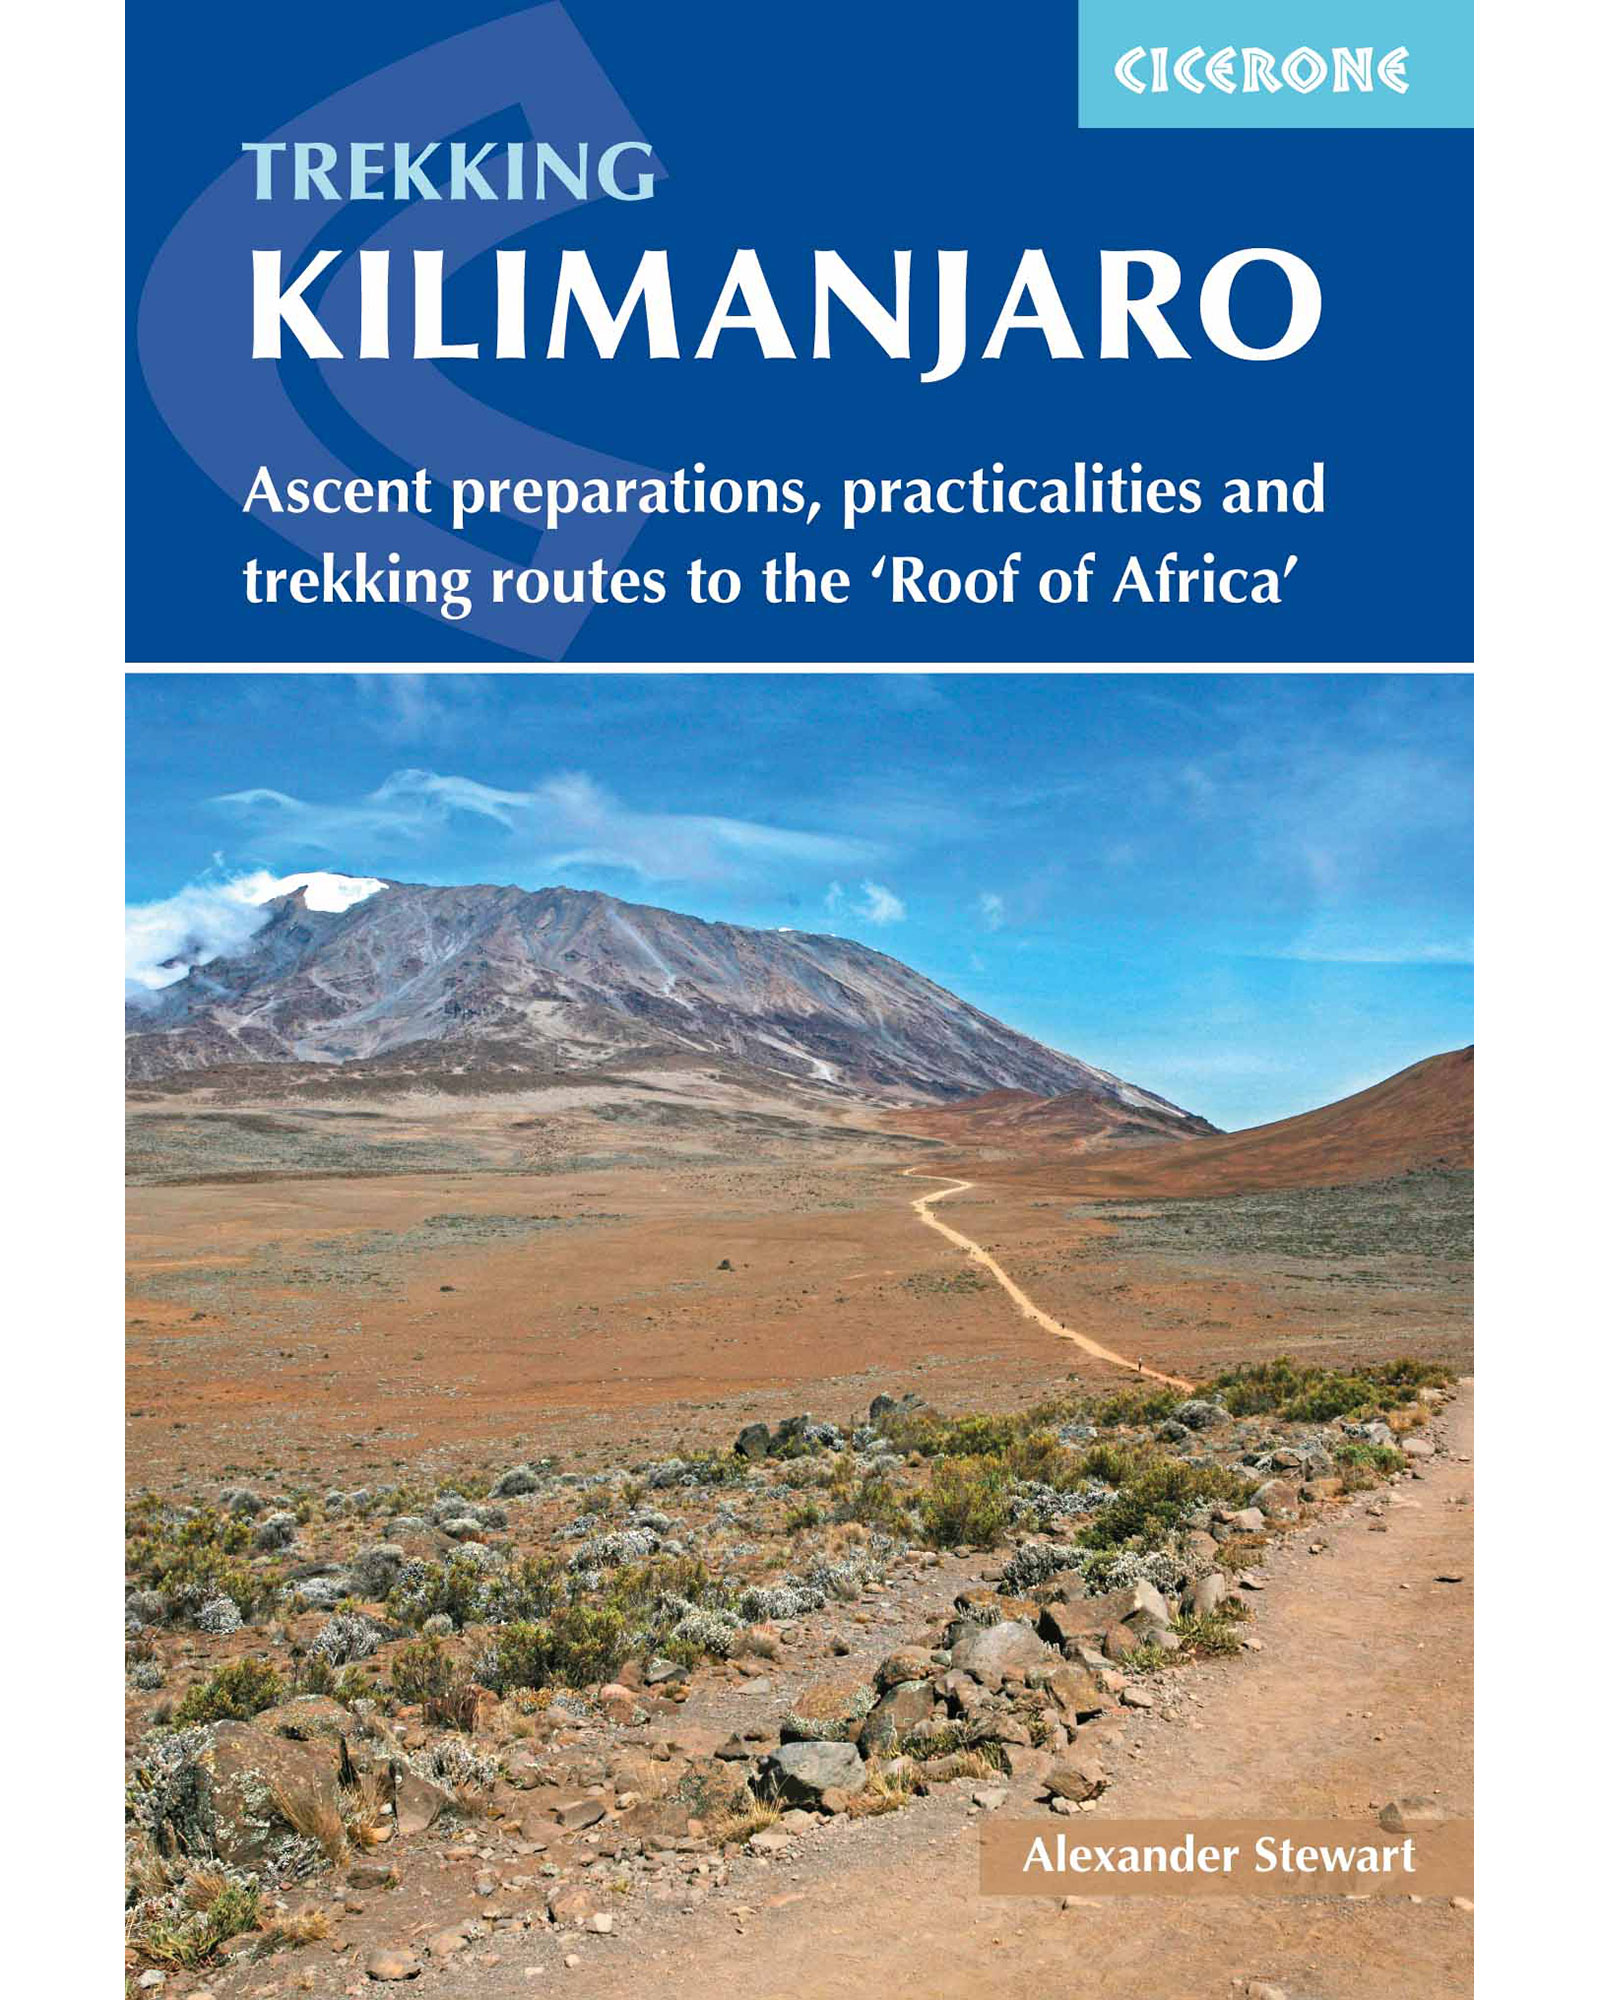 Cicerone Trekking Kilimanjaro Guide Book